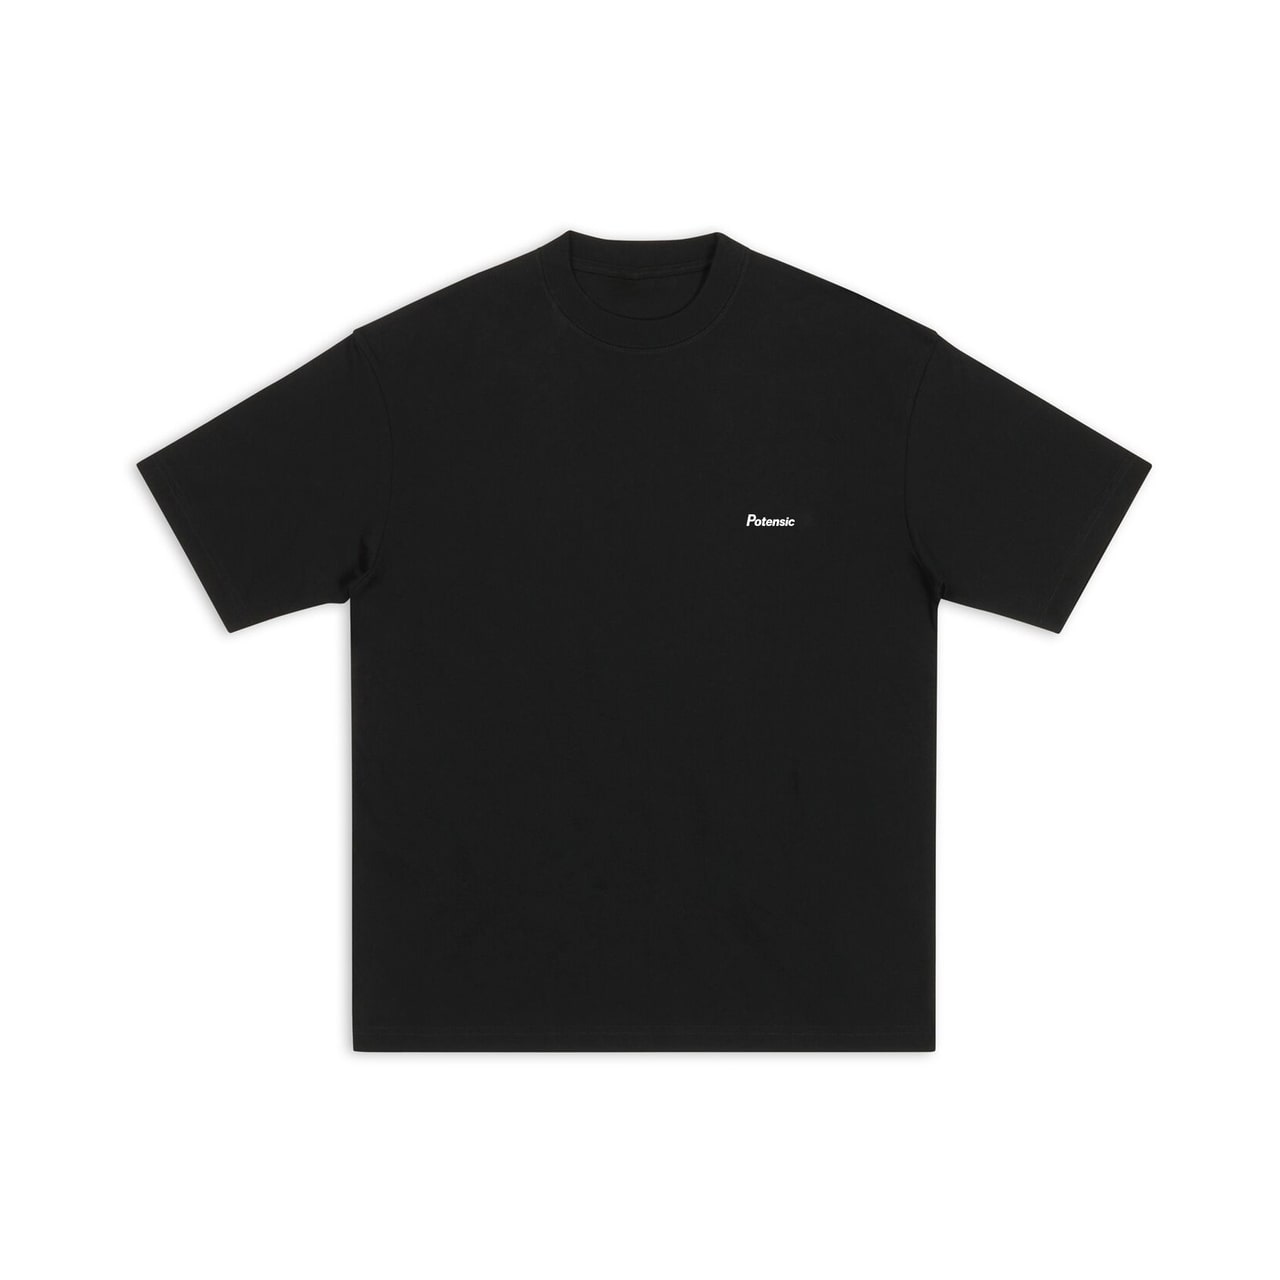 Potensic Pilot T-shirt Black